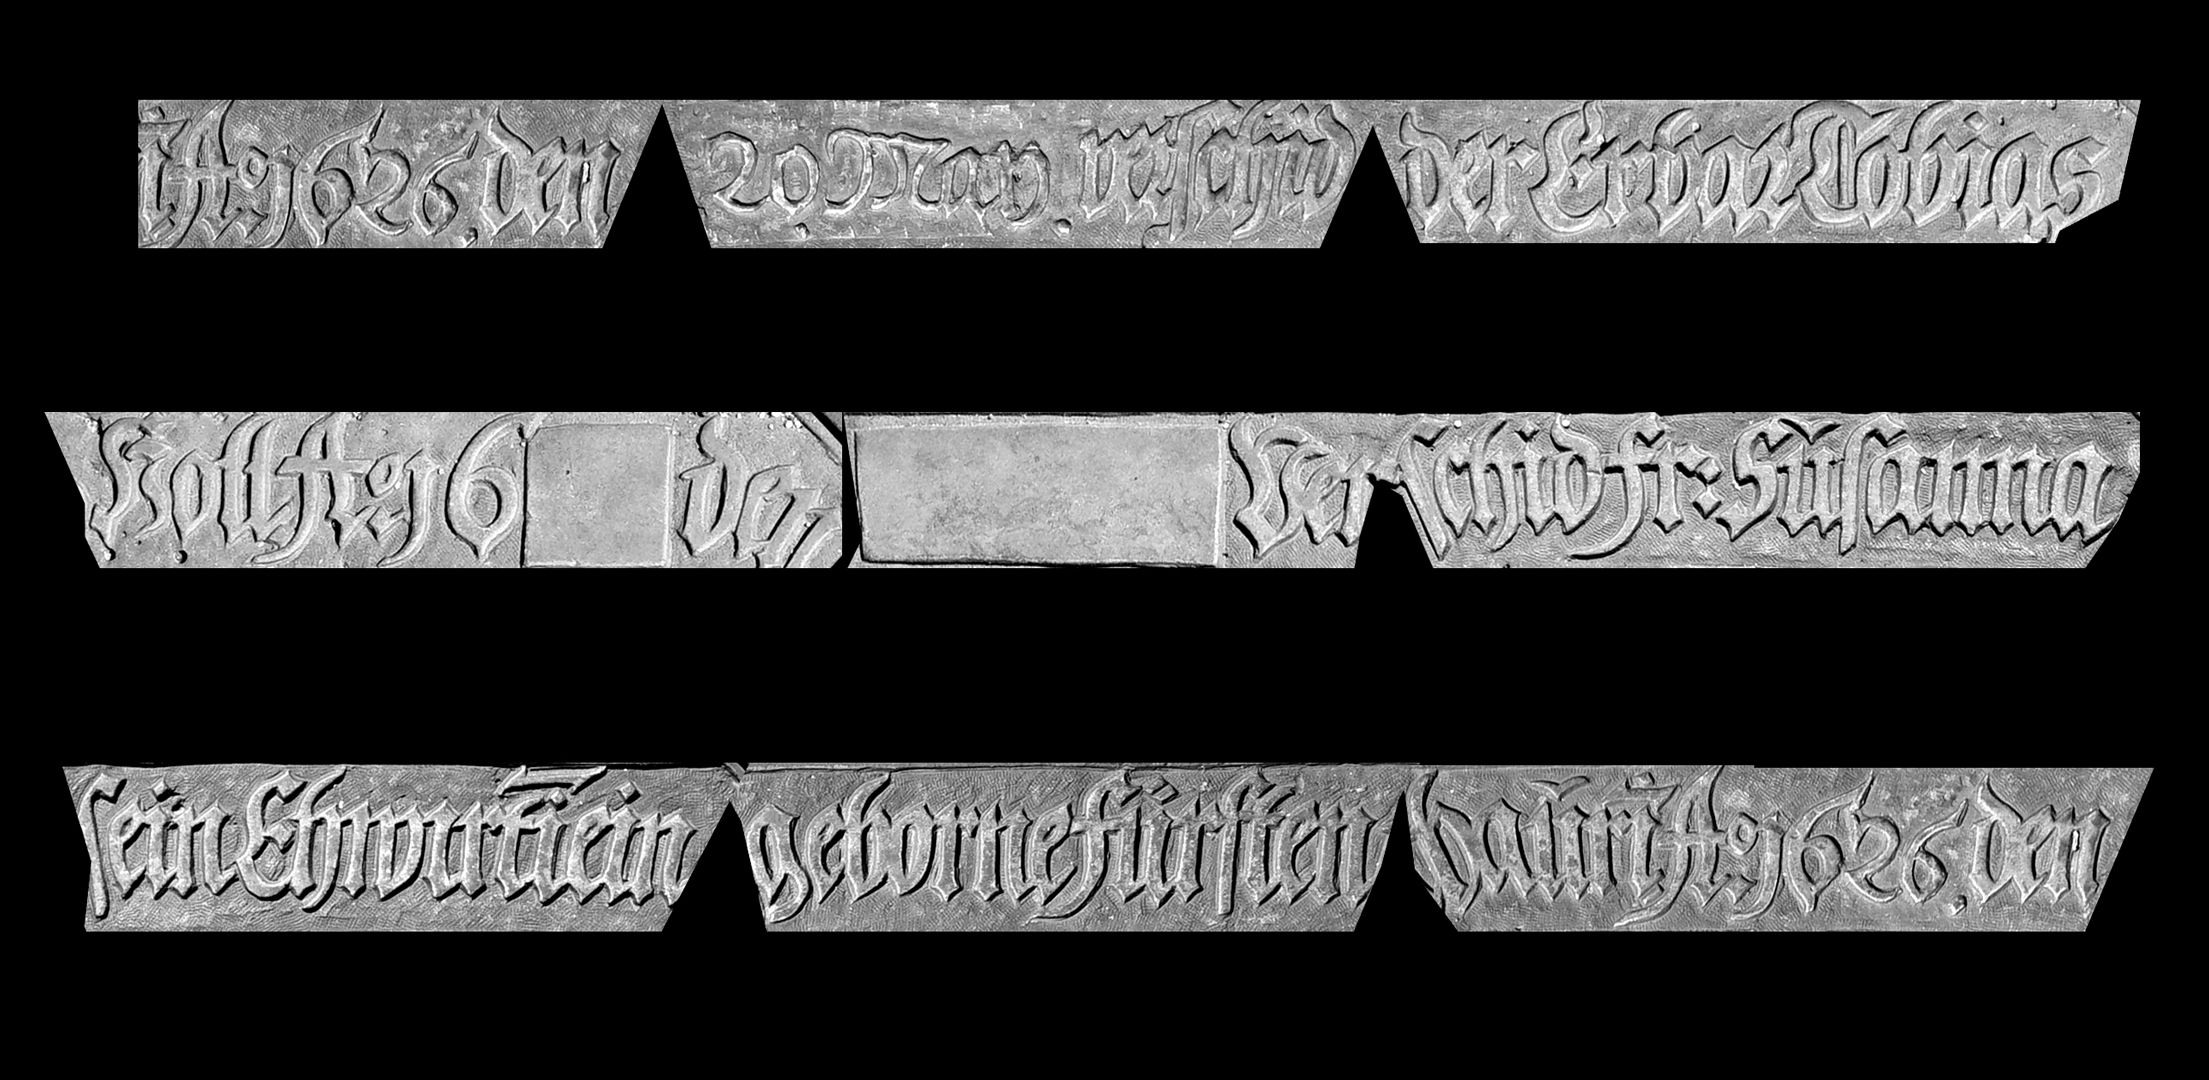 Epitaph für Georg Oertel und seine Frau Susanna sowie für Tobias Holl und seine Frau Susanna Epitaph 2, umlaufende Inschrift